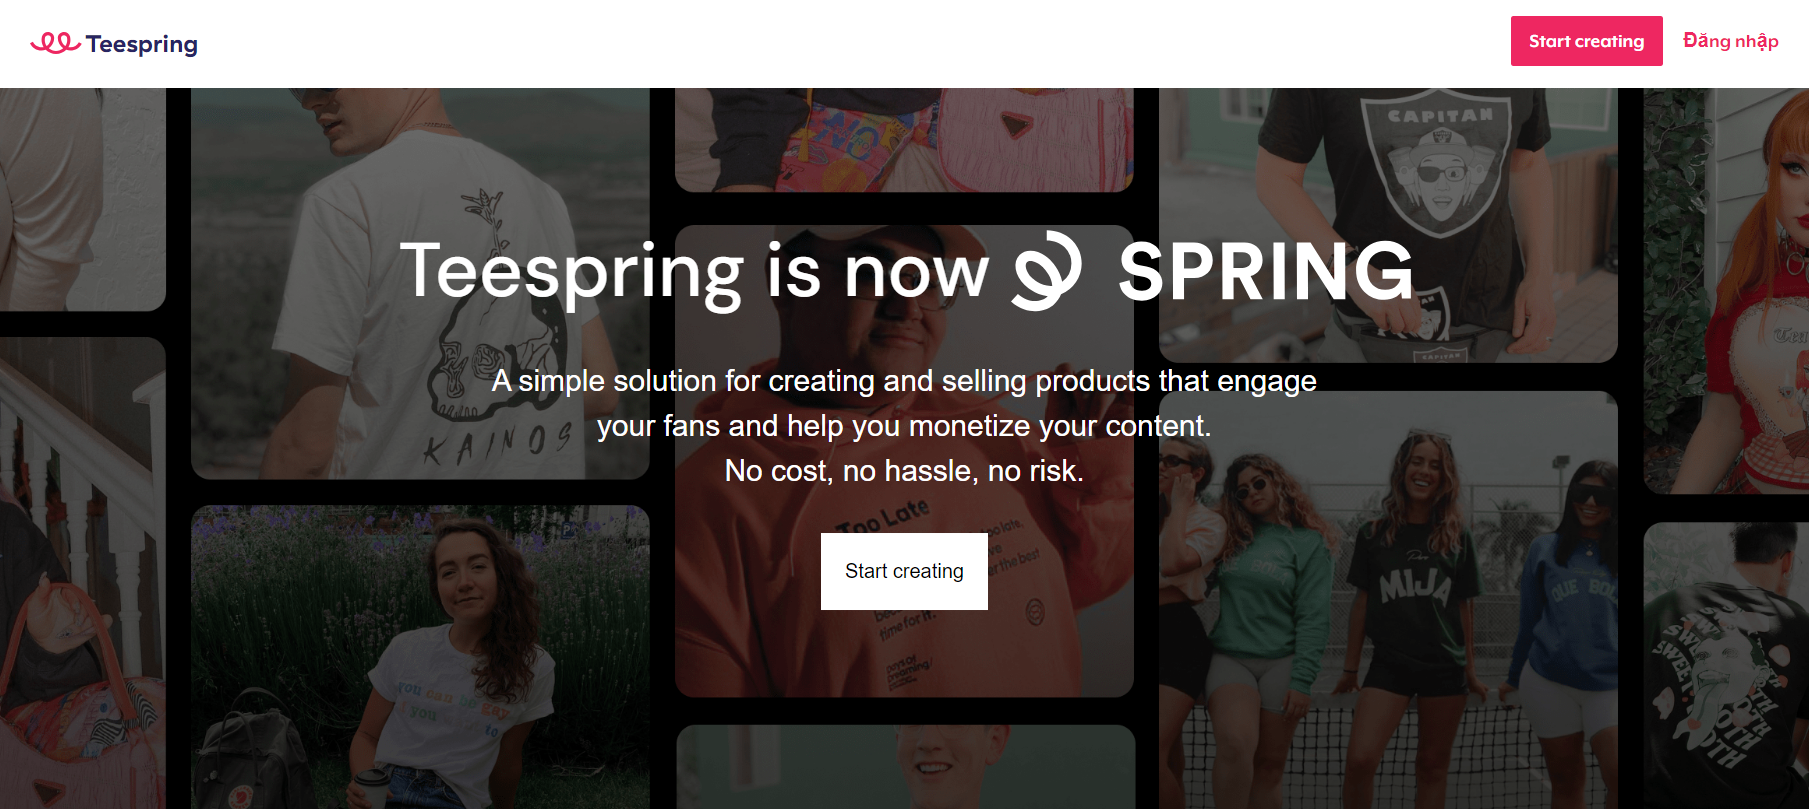 Trang web kiếm tiền bằng cách thiết kế áo thun Teespring